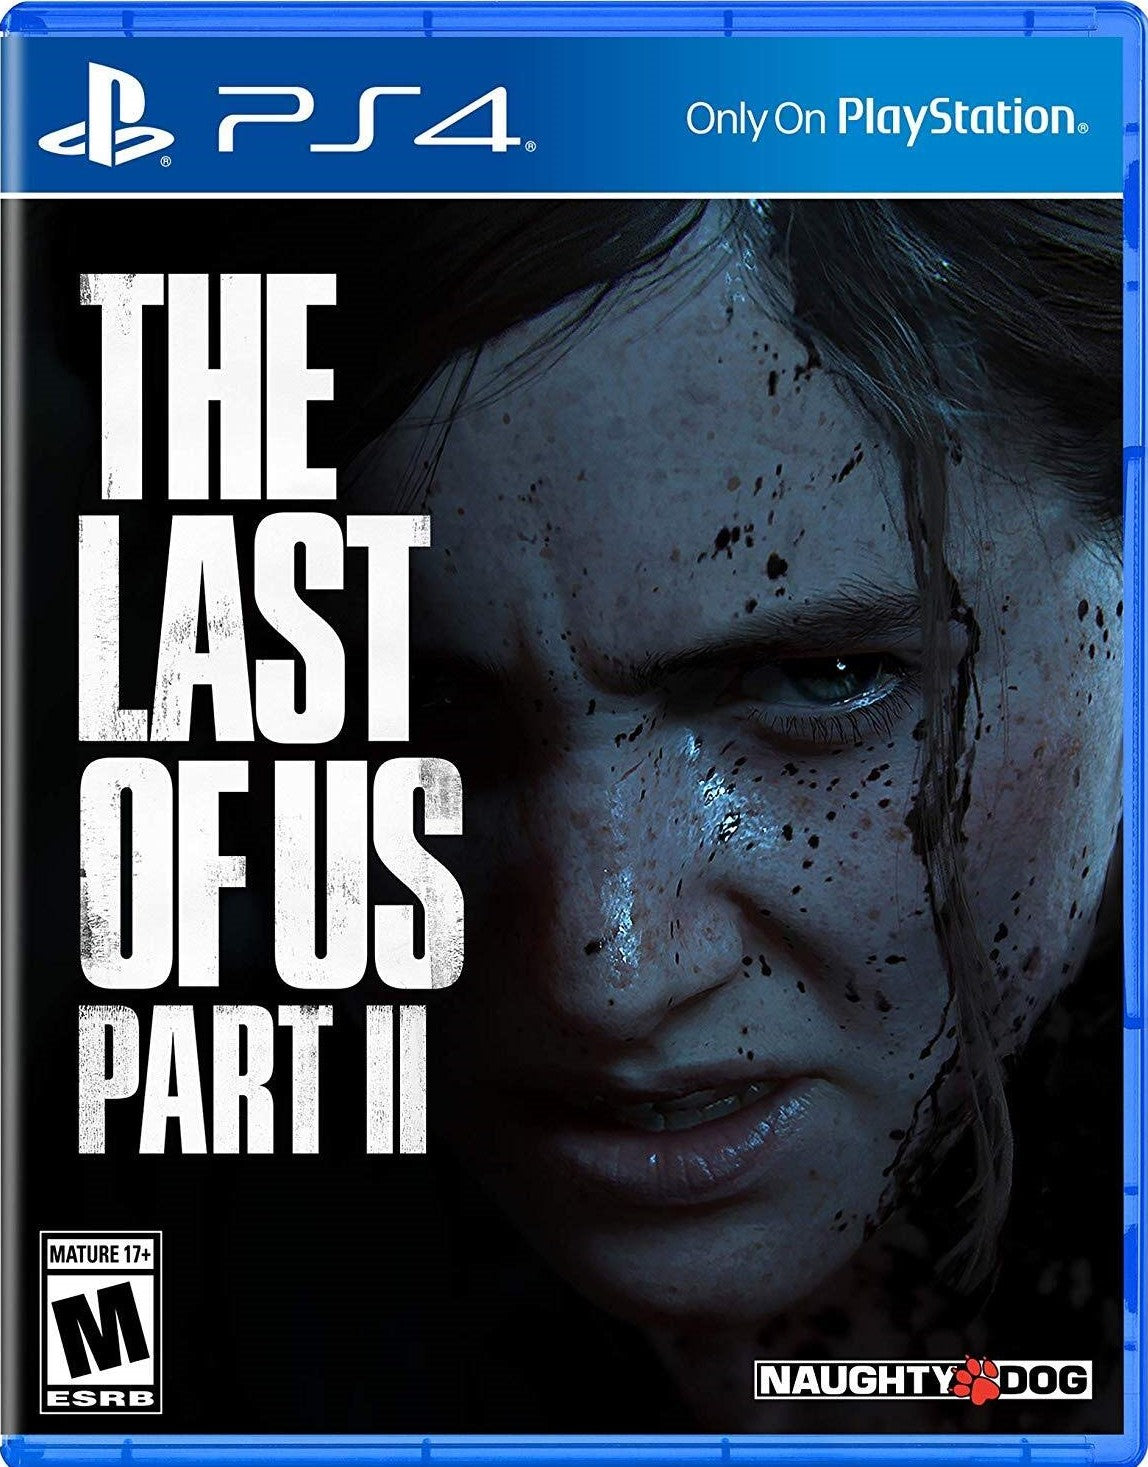 The Last Of Us Parte I Ps5 – Mundo Gamer Venezuela